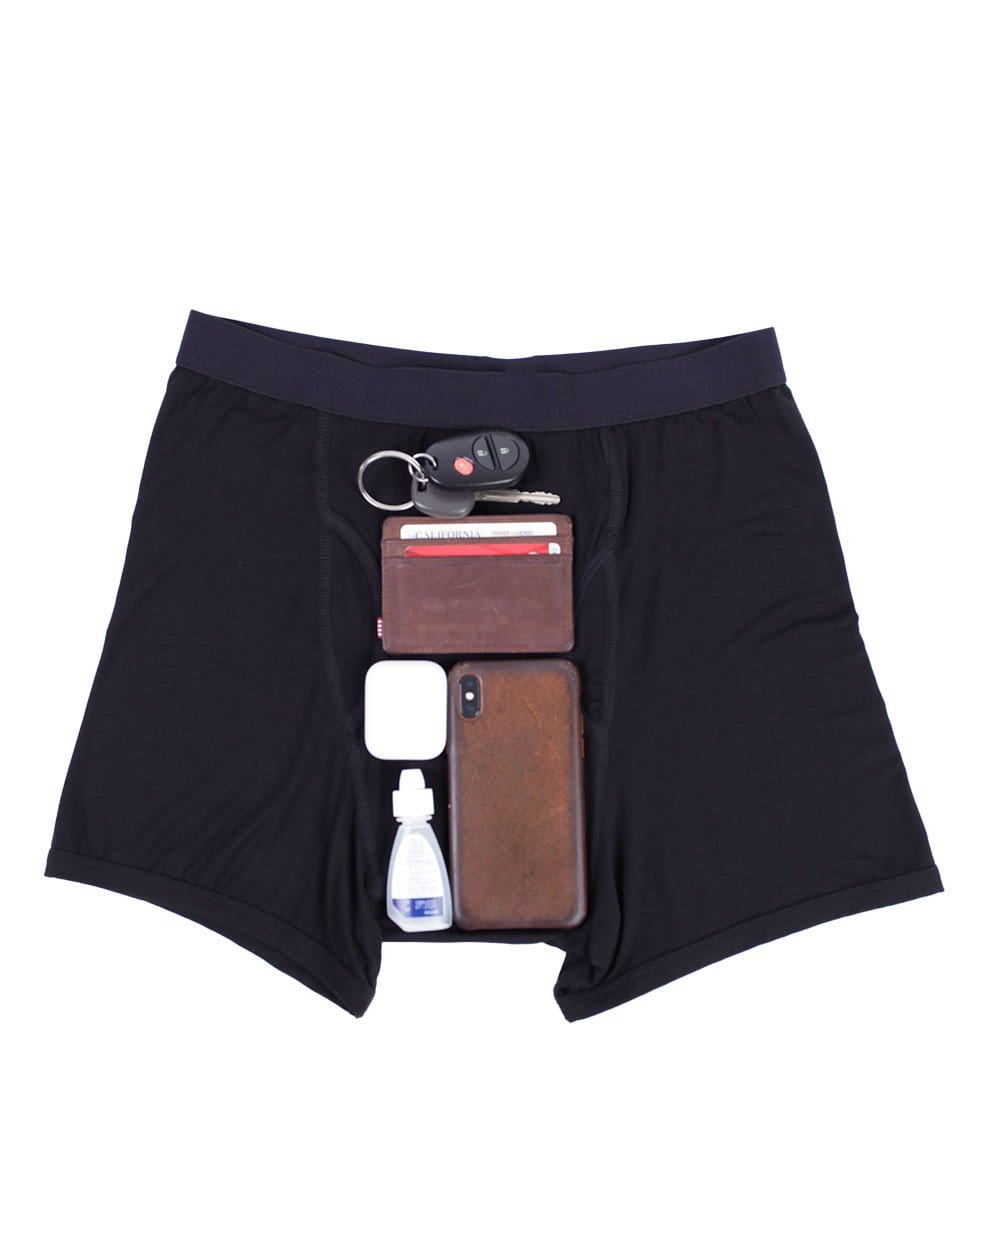 Frontwalk Mens Pocket Underwear with Secret Front Stash Pocket